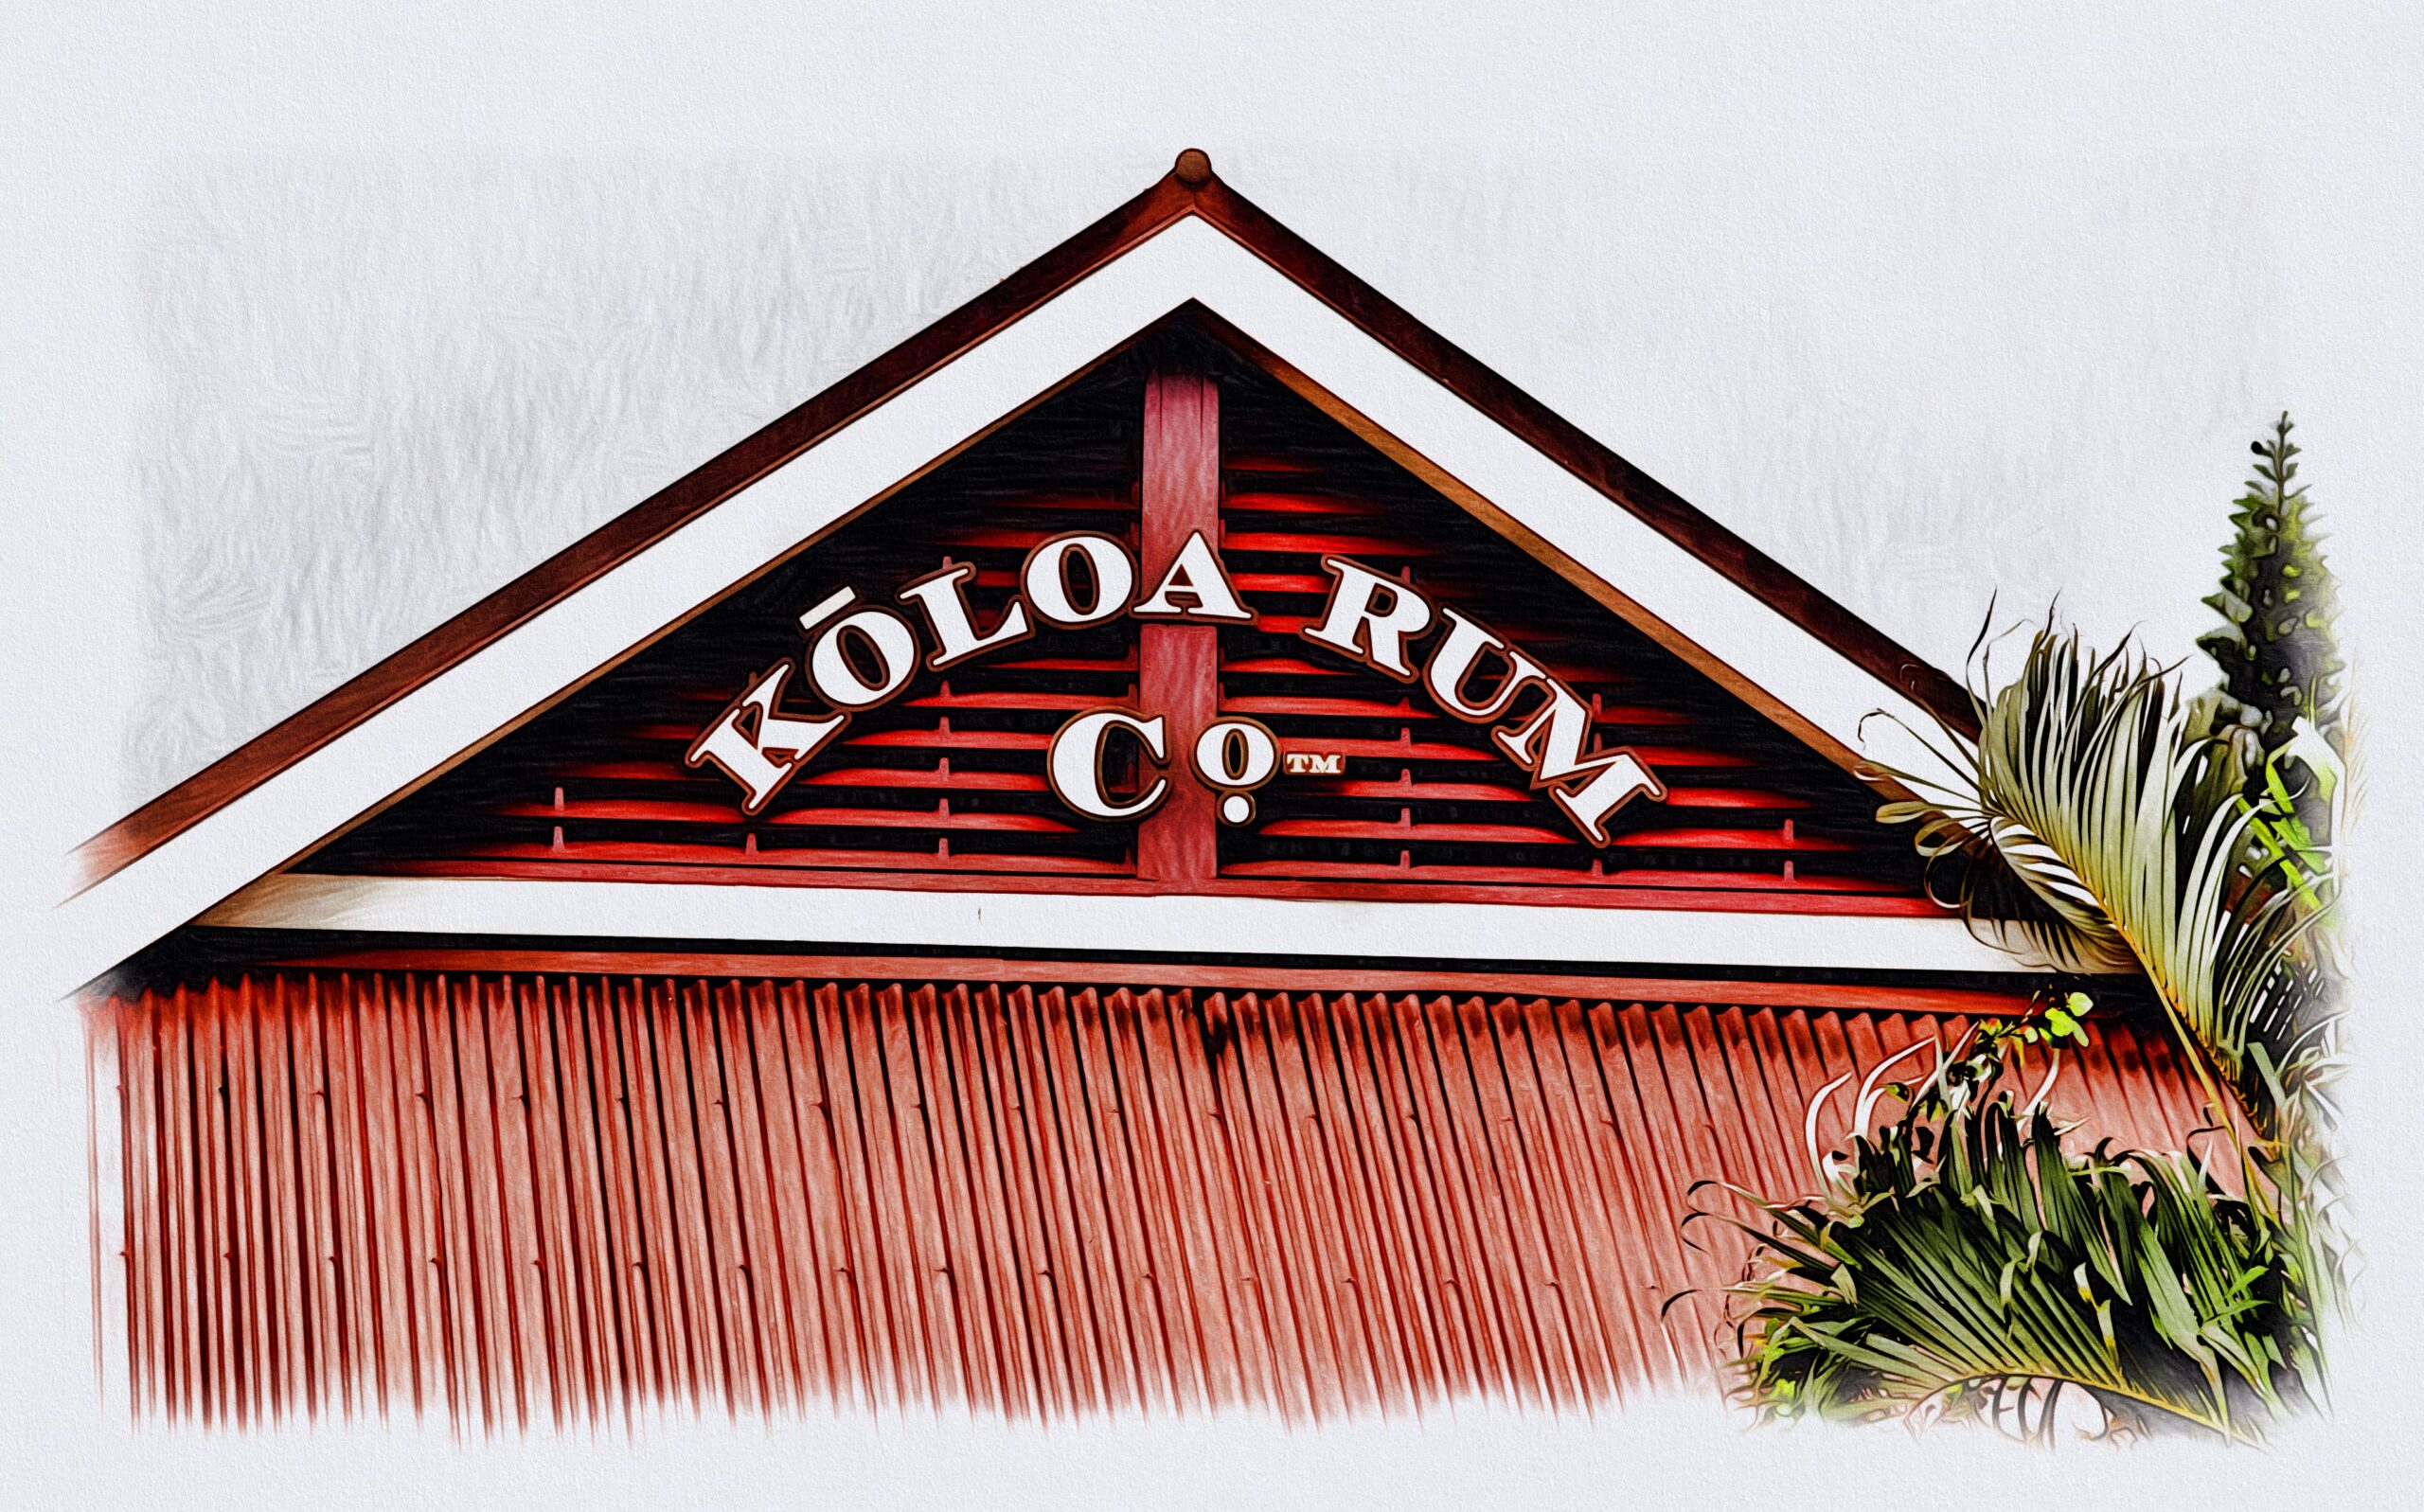 Koloa Rum 